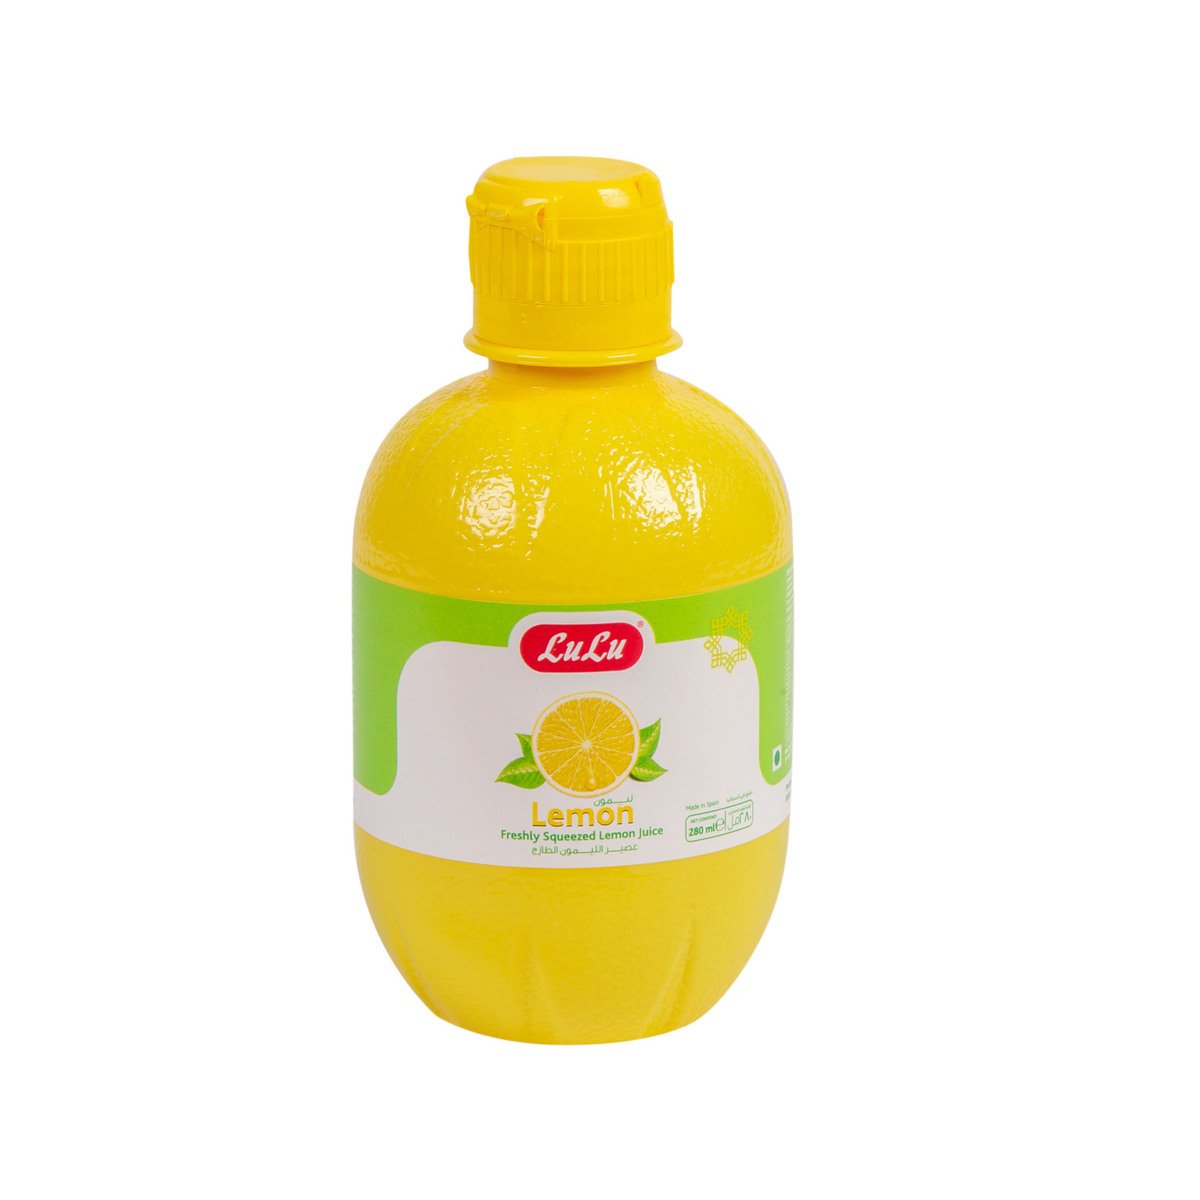 LuLu Freshly Squeezed Lemon juice 280 ml Online at Best Price